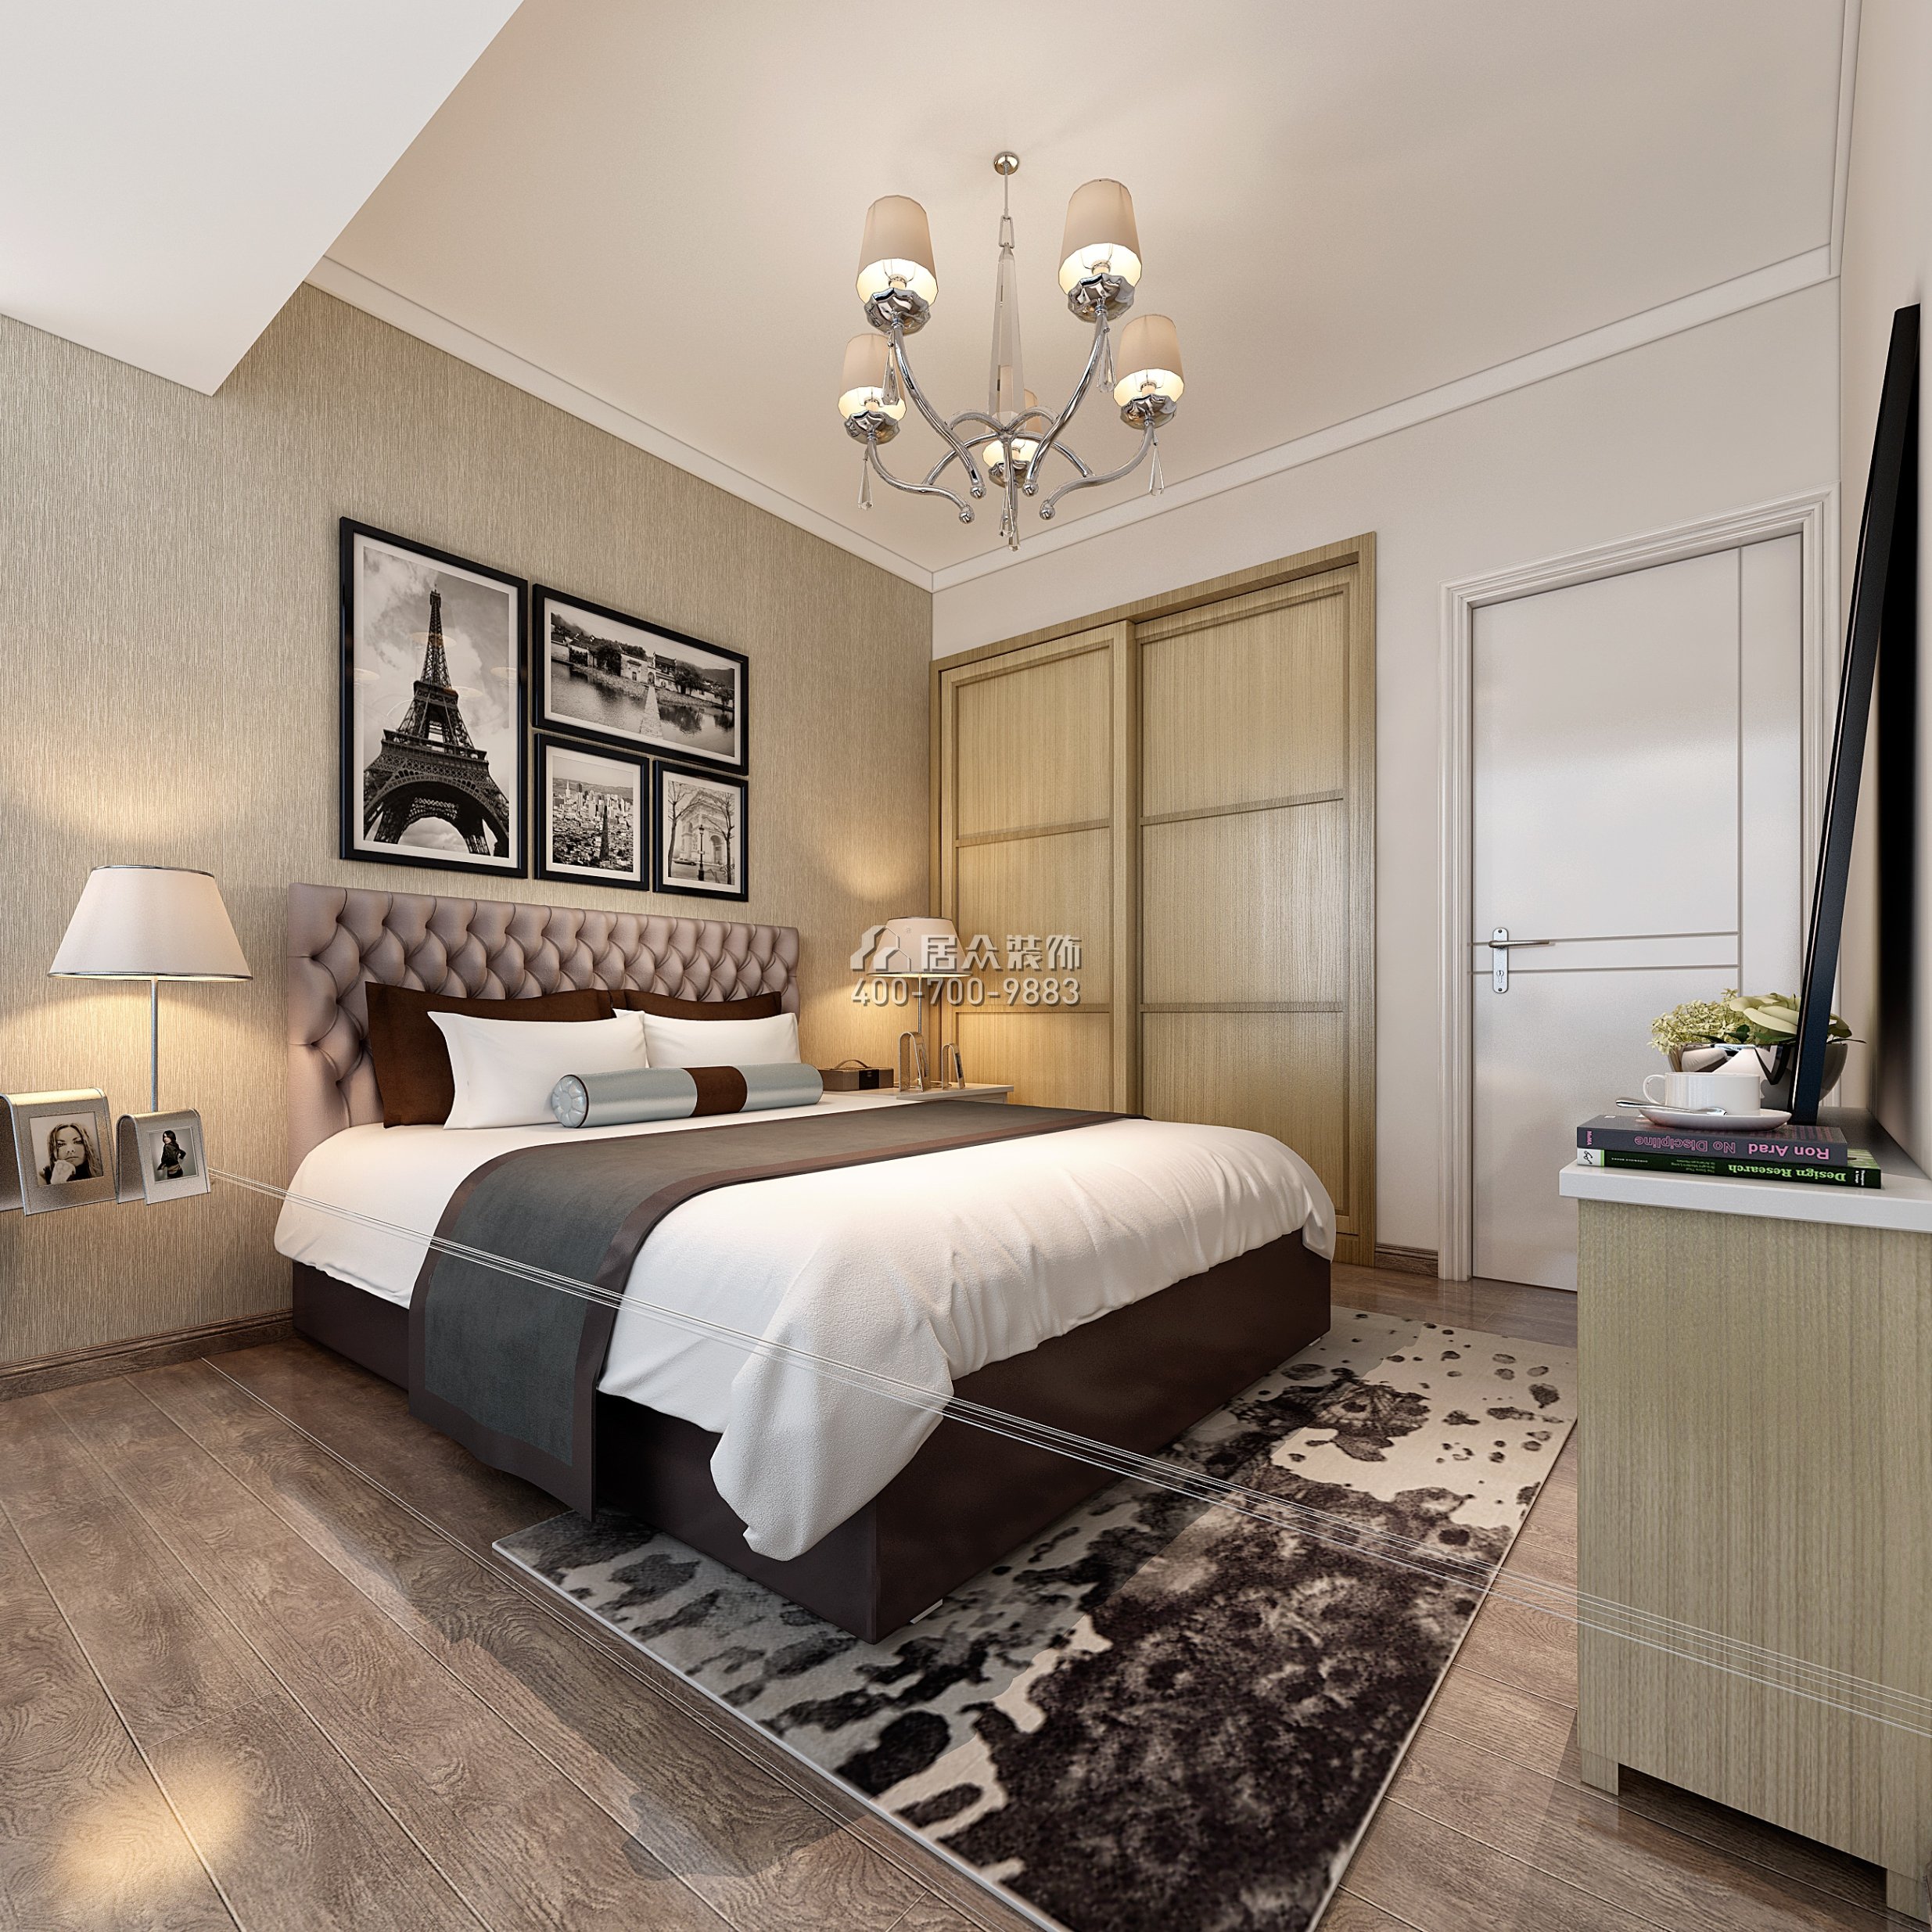 佳兆业广场80平方米现代简约风格平层户型卧室装修效果图